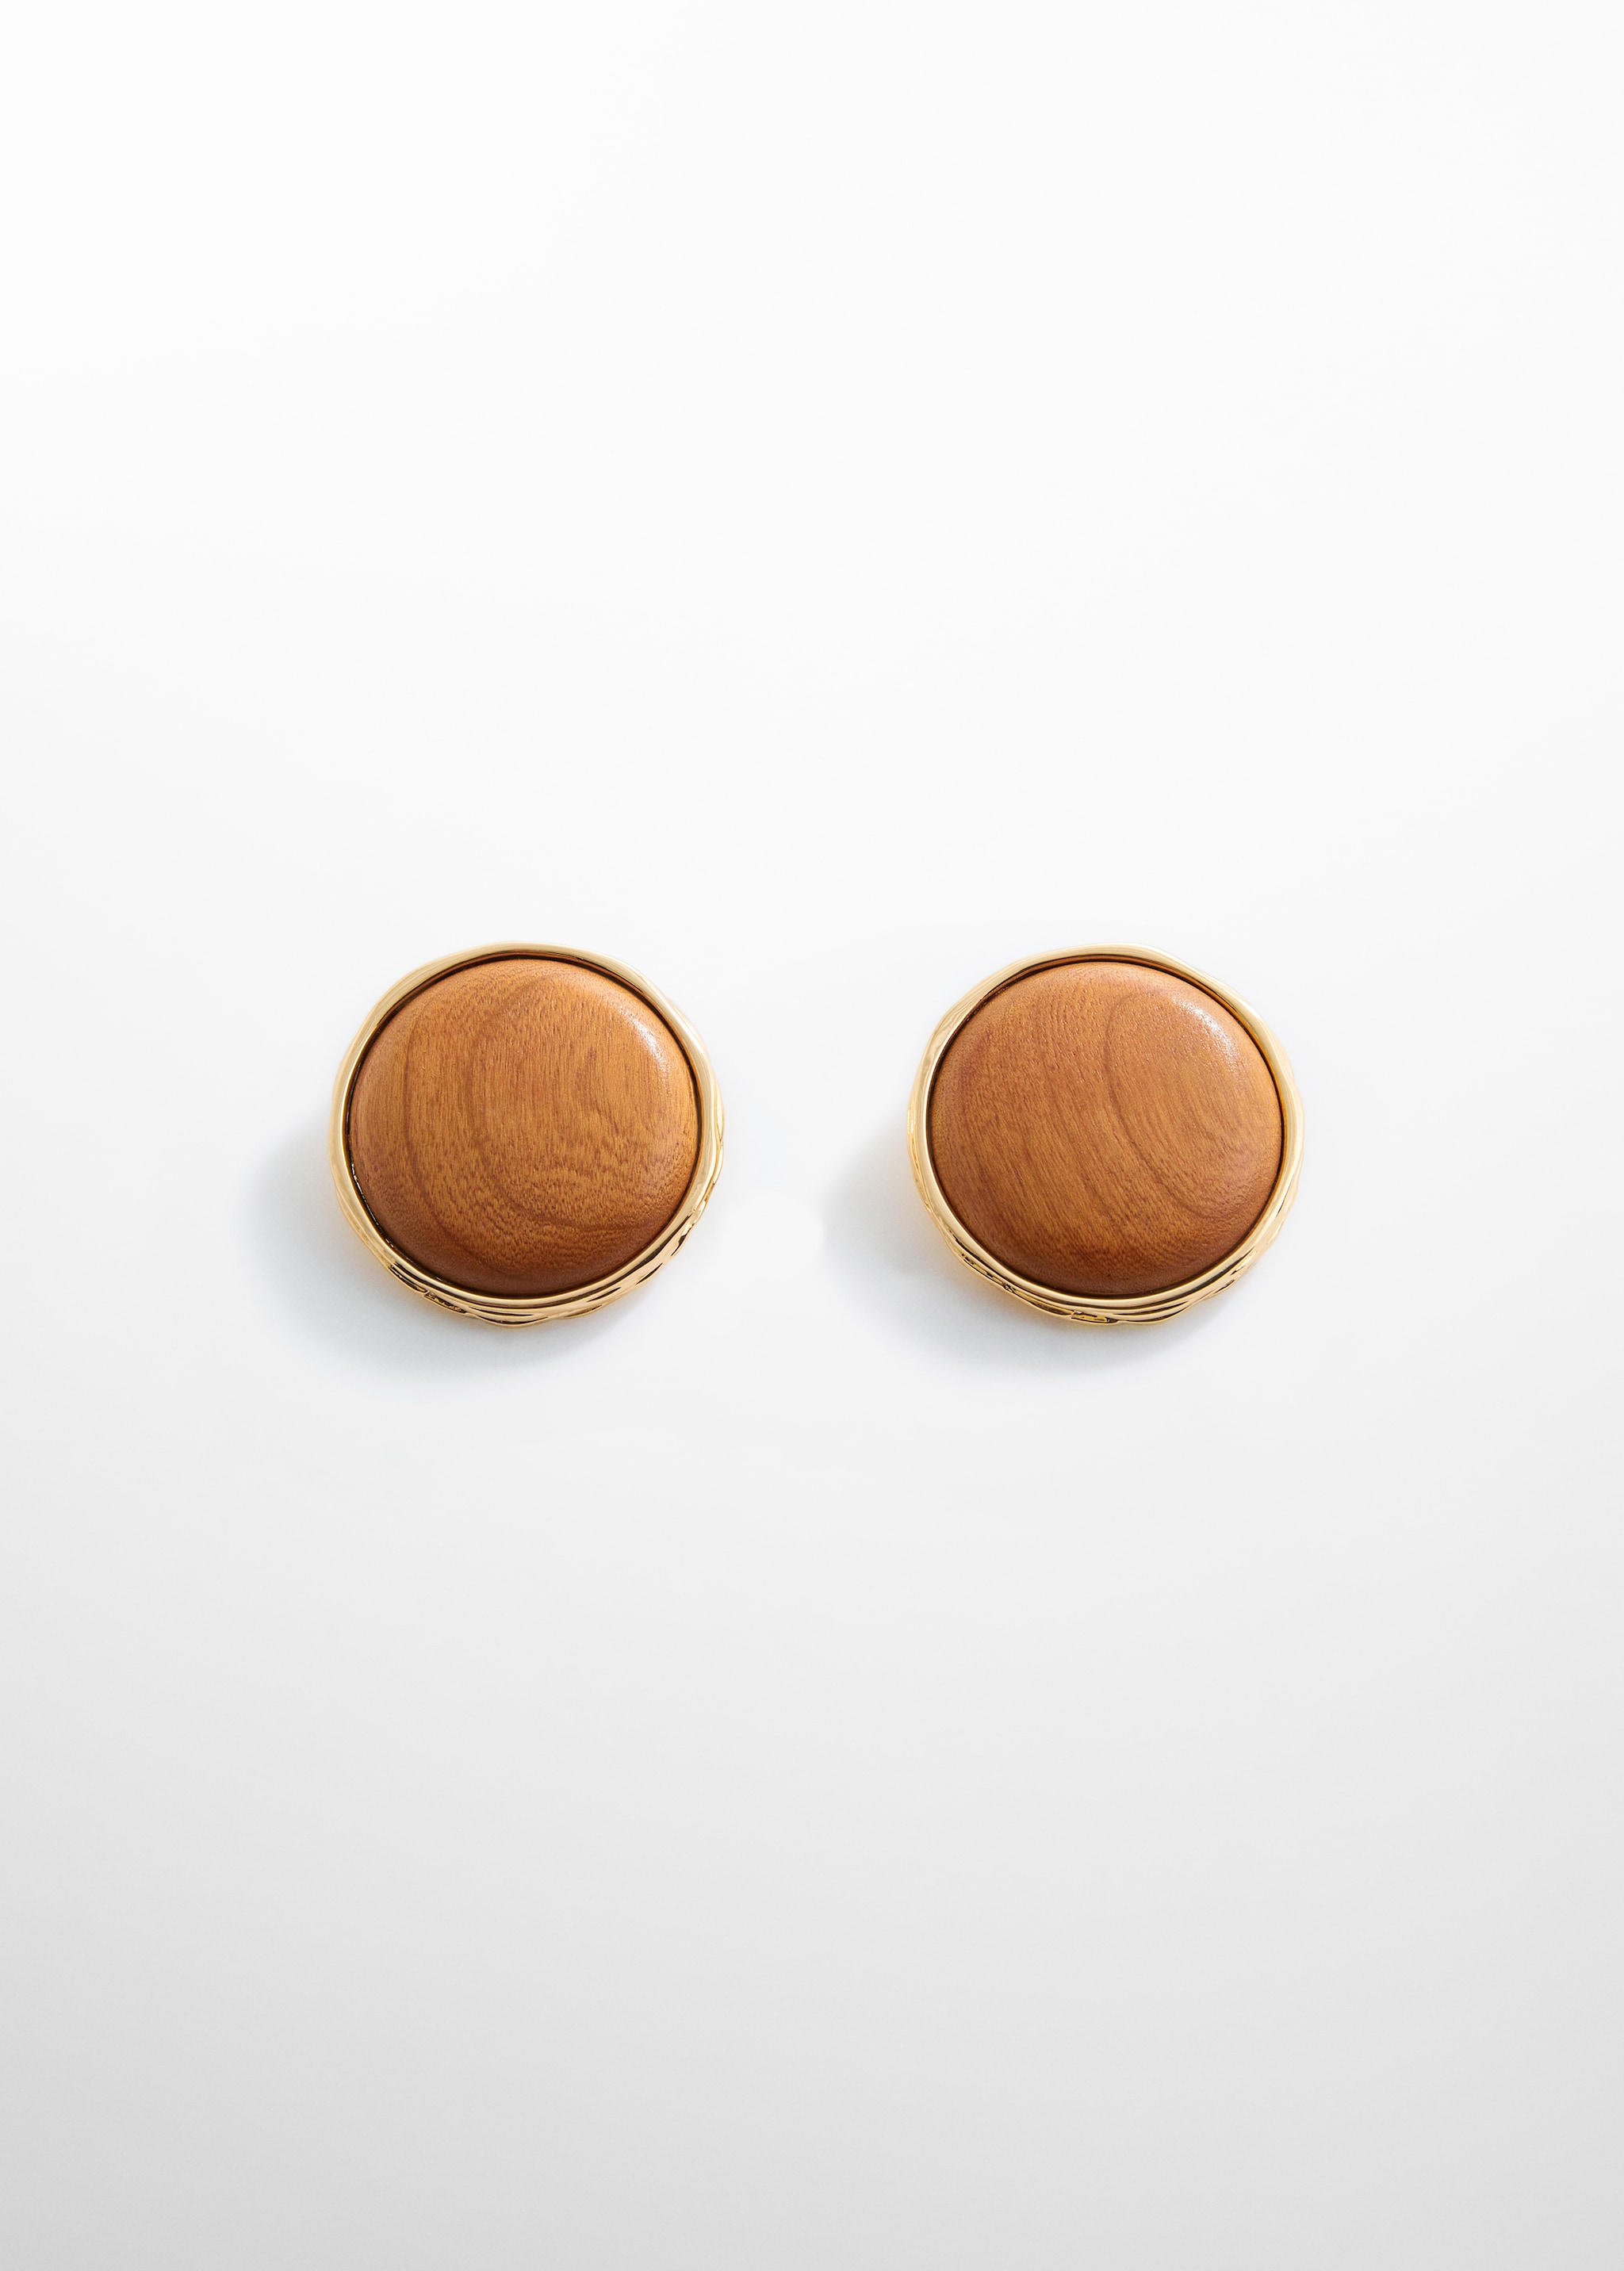 Boucles d'oreilles bois design circulaire - Article sans modèle